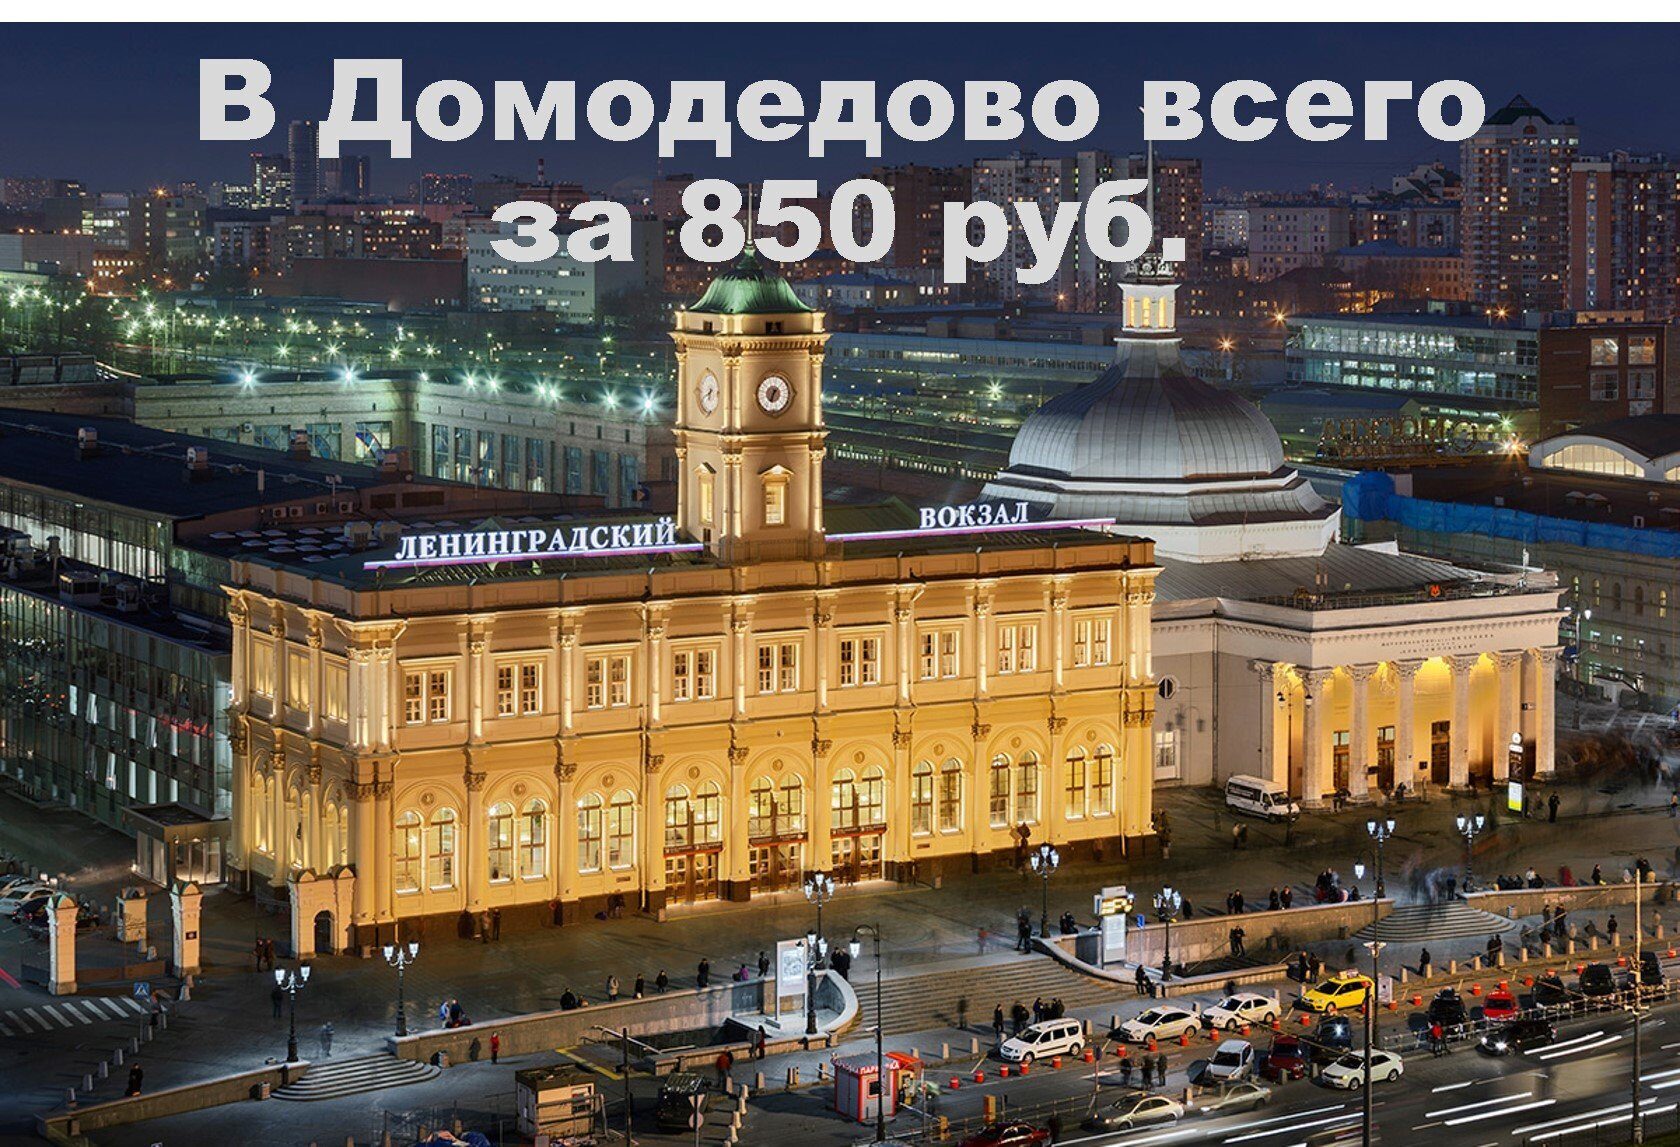 Замовлення таксі від Ленінградського вокзалу до Домодєдово по телефону +79857768004 цілодобово, за 5 хвилин